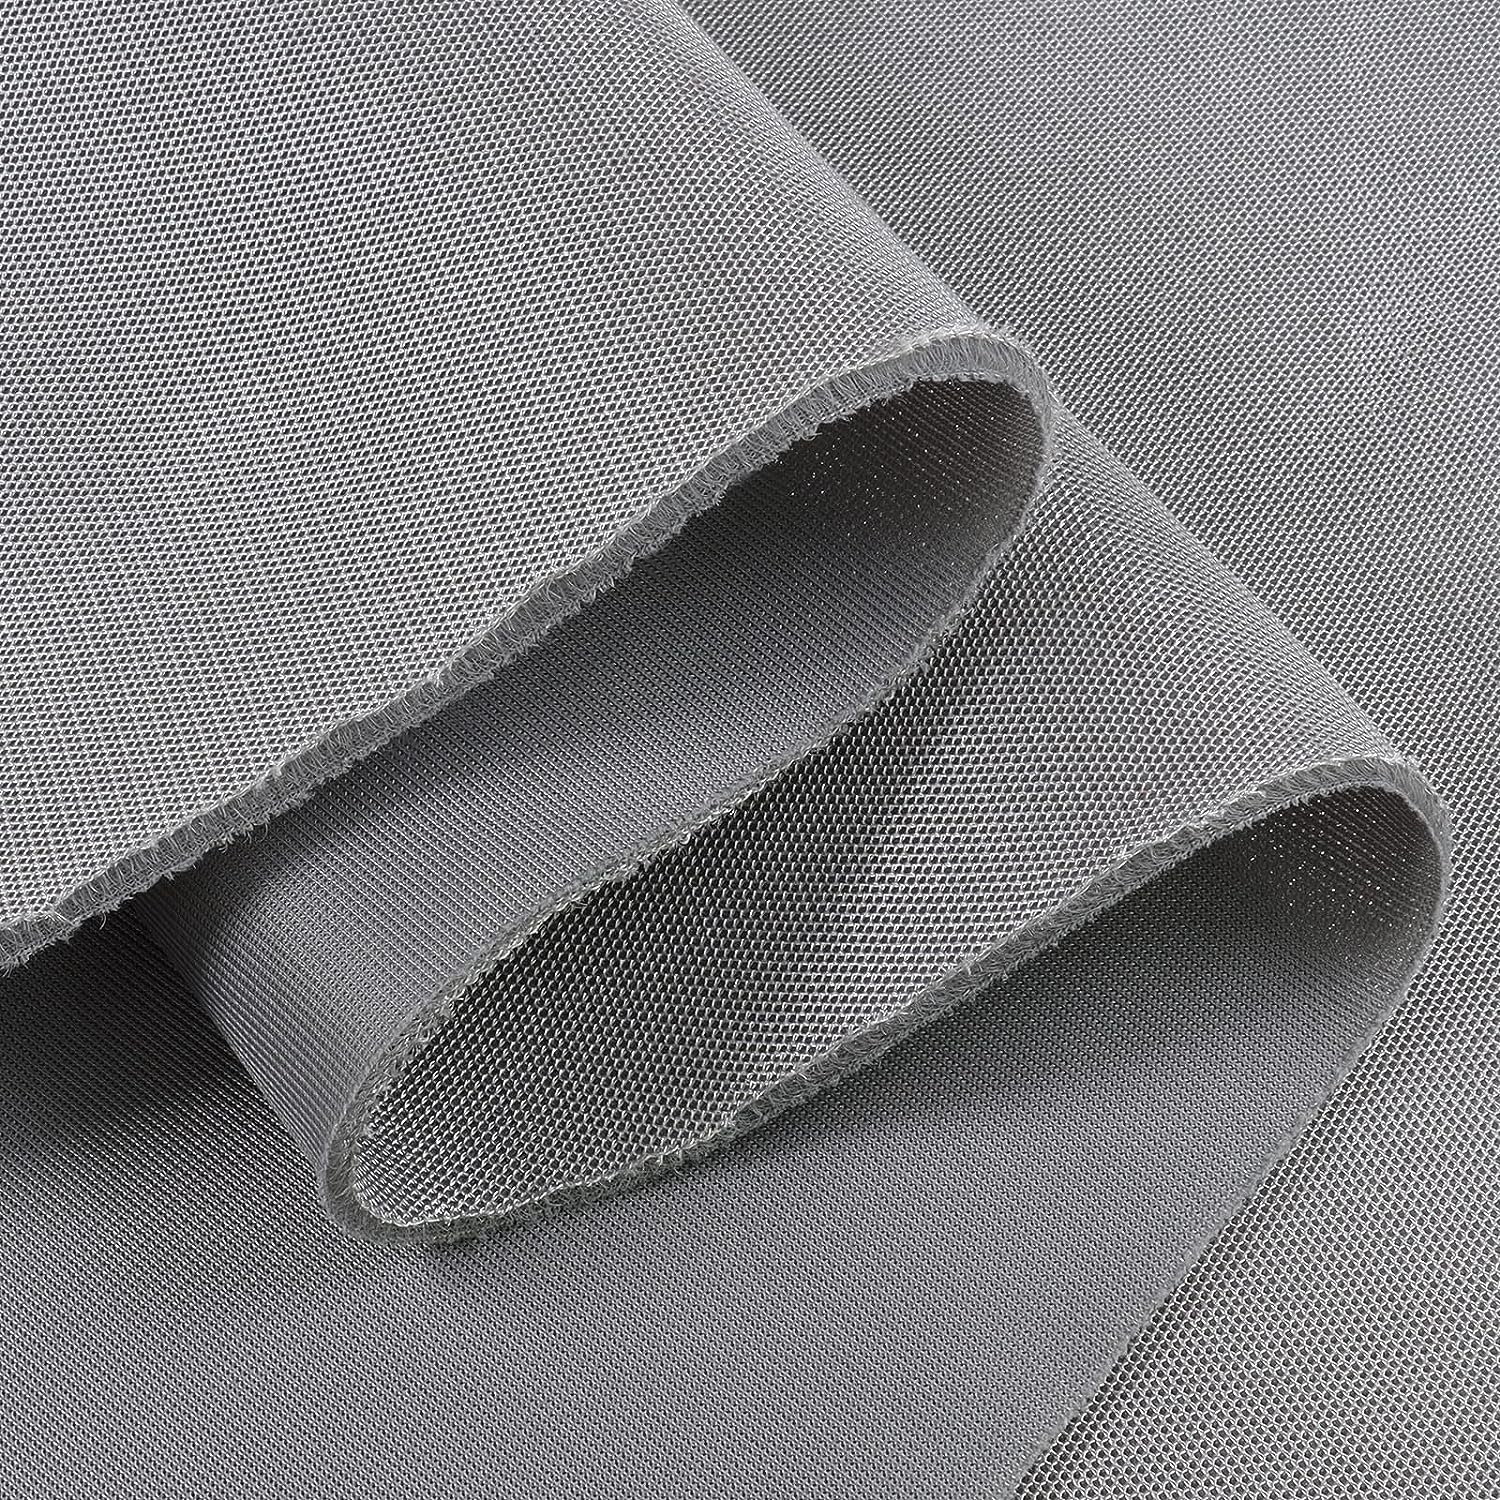 Sandwich Netting Fabric